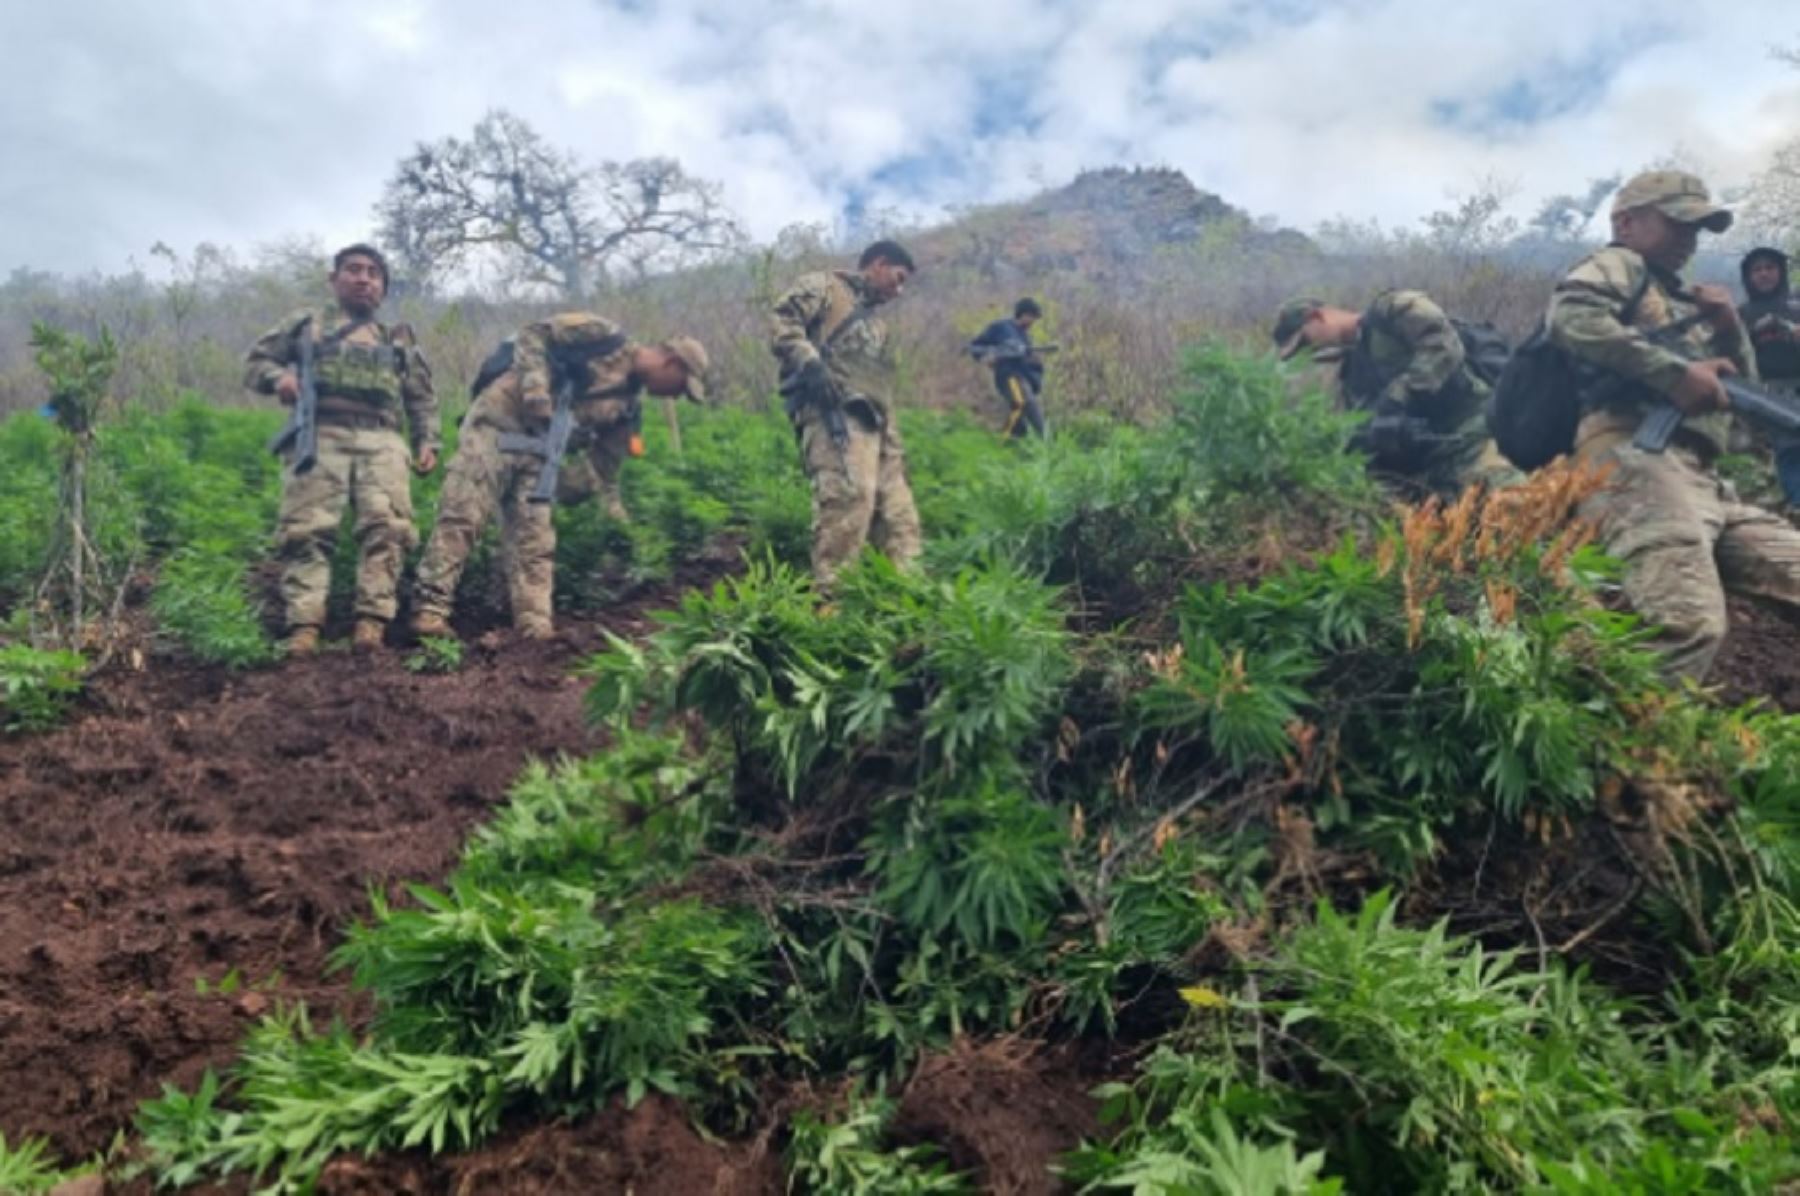 En un nuevo accionar en la lucha contra el narcotráfico, las Fuerzas Armadas y la Policía Nacional intervinieron el 28 y 29 de octubre 200,000 plantones de marihuana, así como un laboratorio rústico para la elaboración de droga, informó hoy el Comando Conjunto de las Fuerzas Armadas.